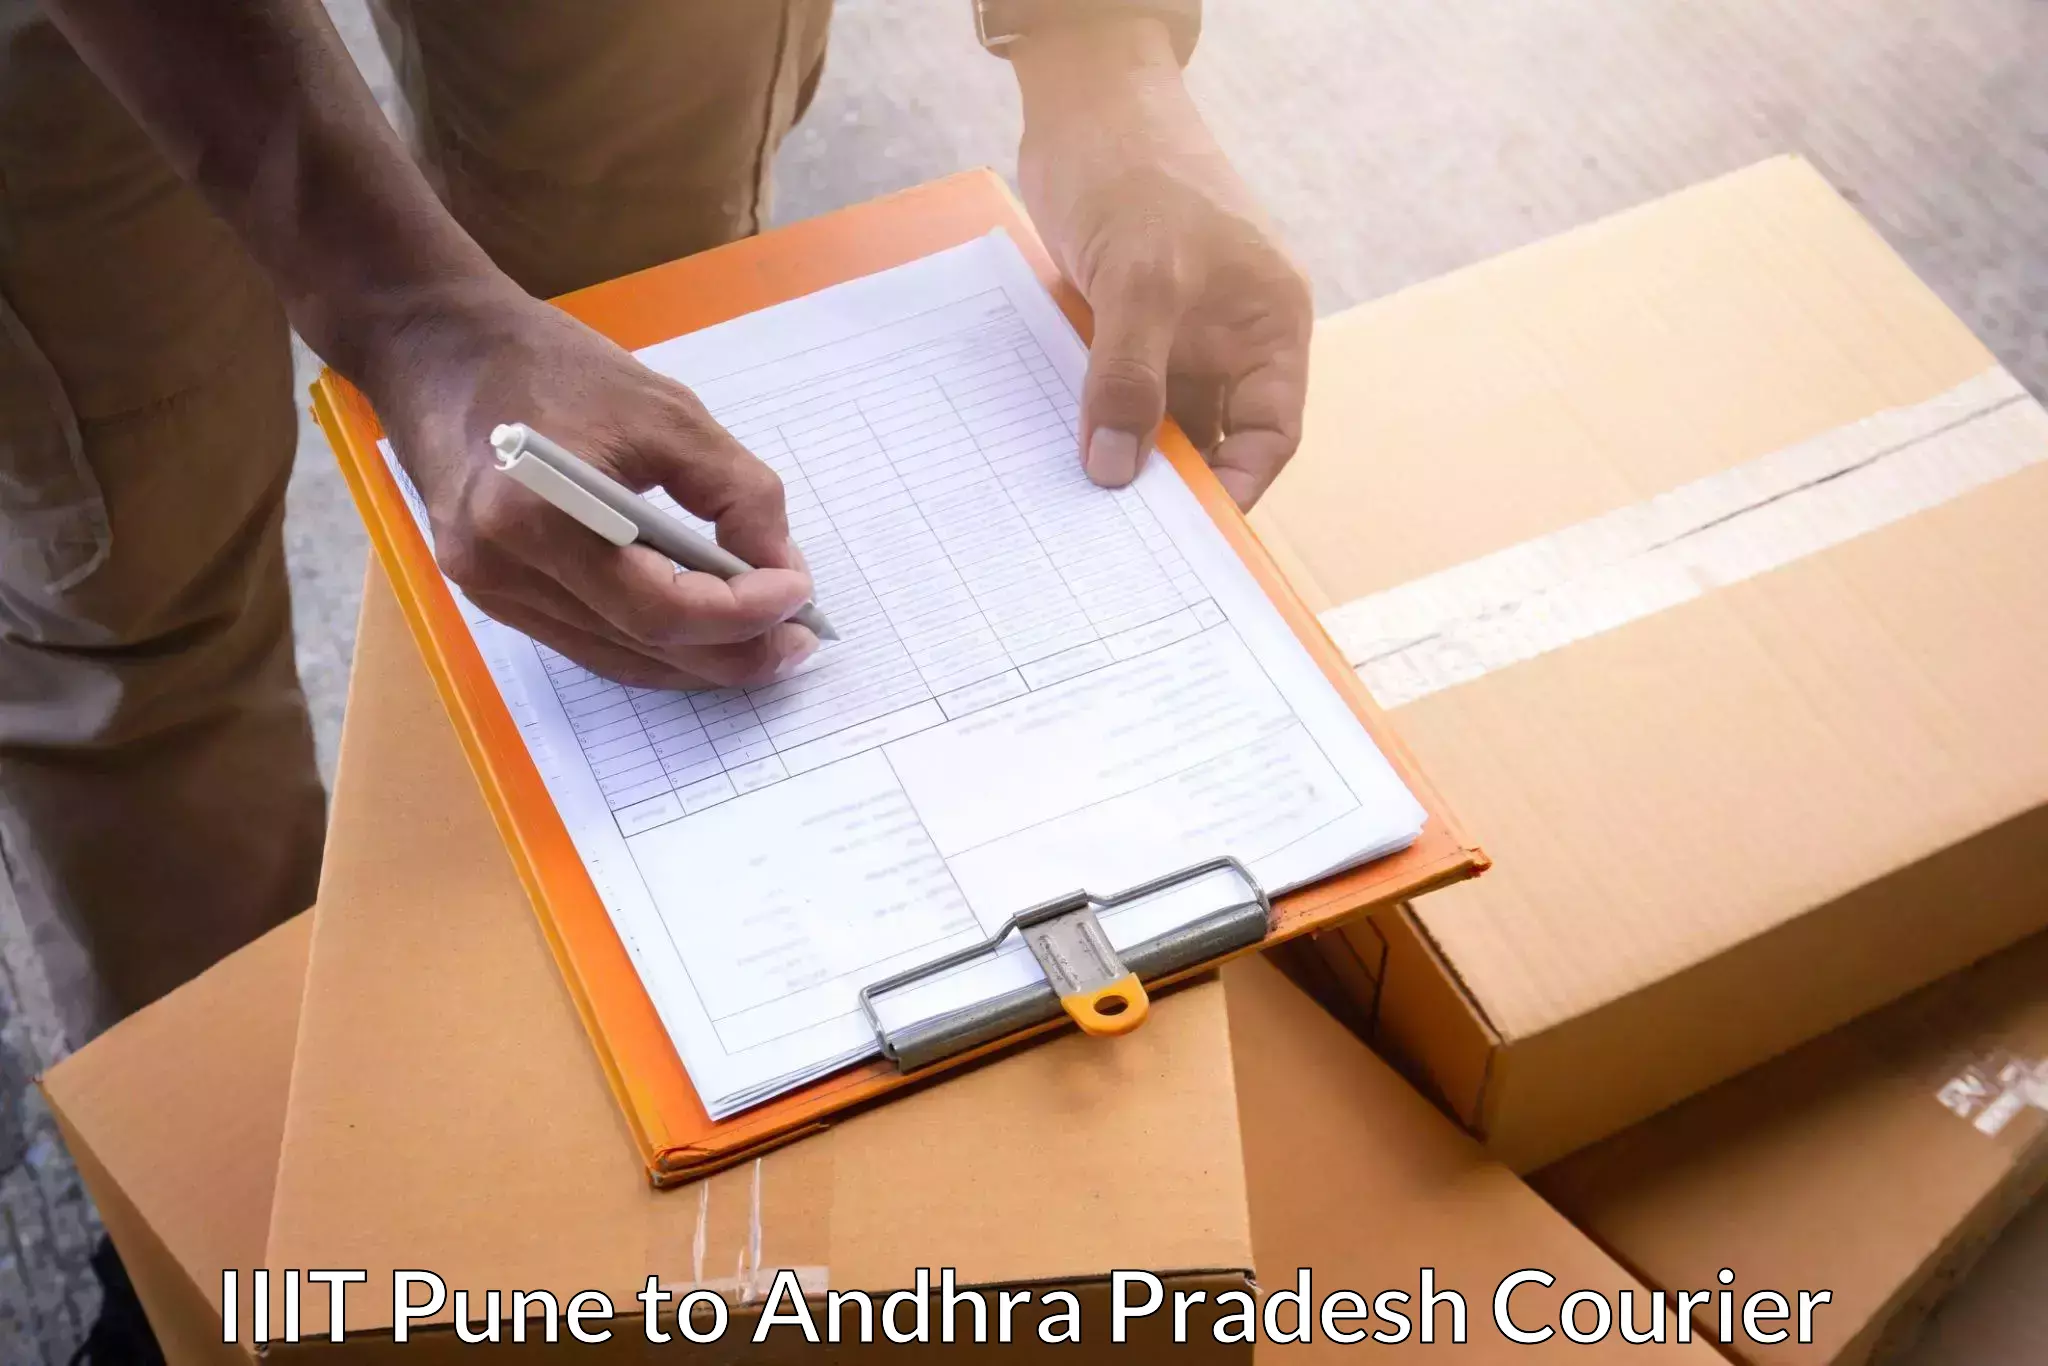 Cost-effective courier options IIIT Pune to Kotturu Srikakulam